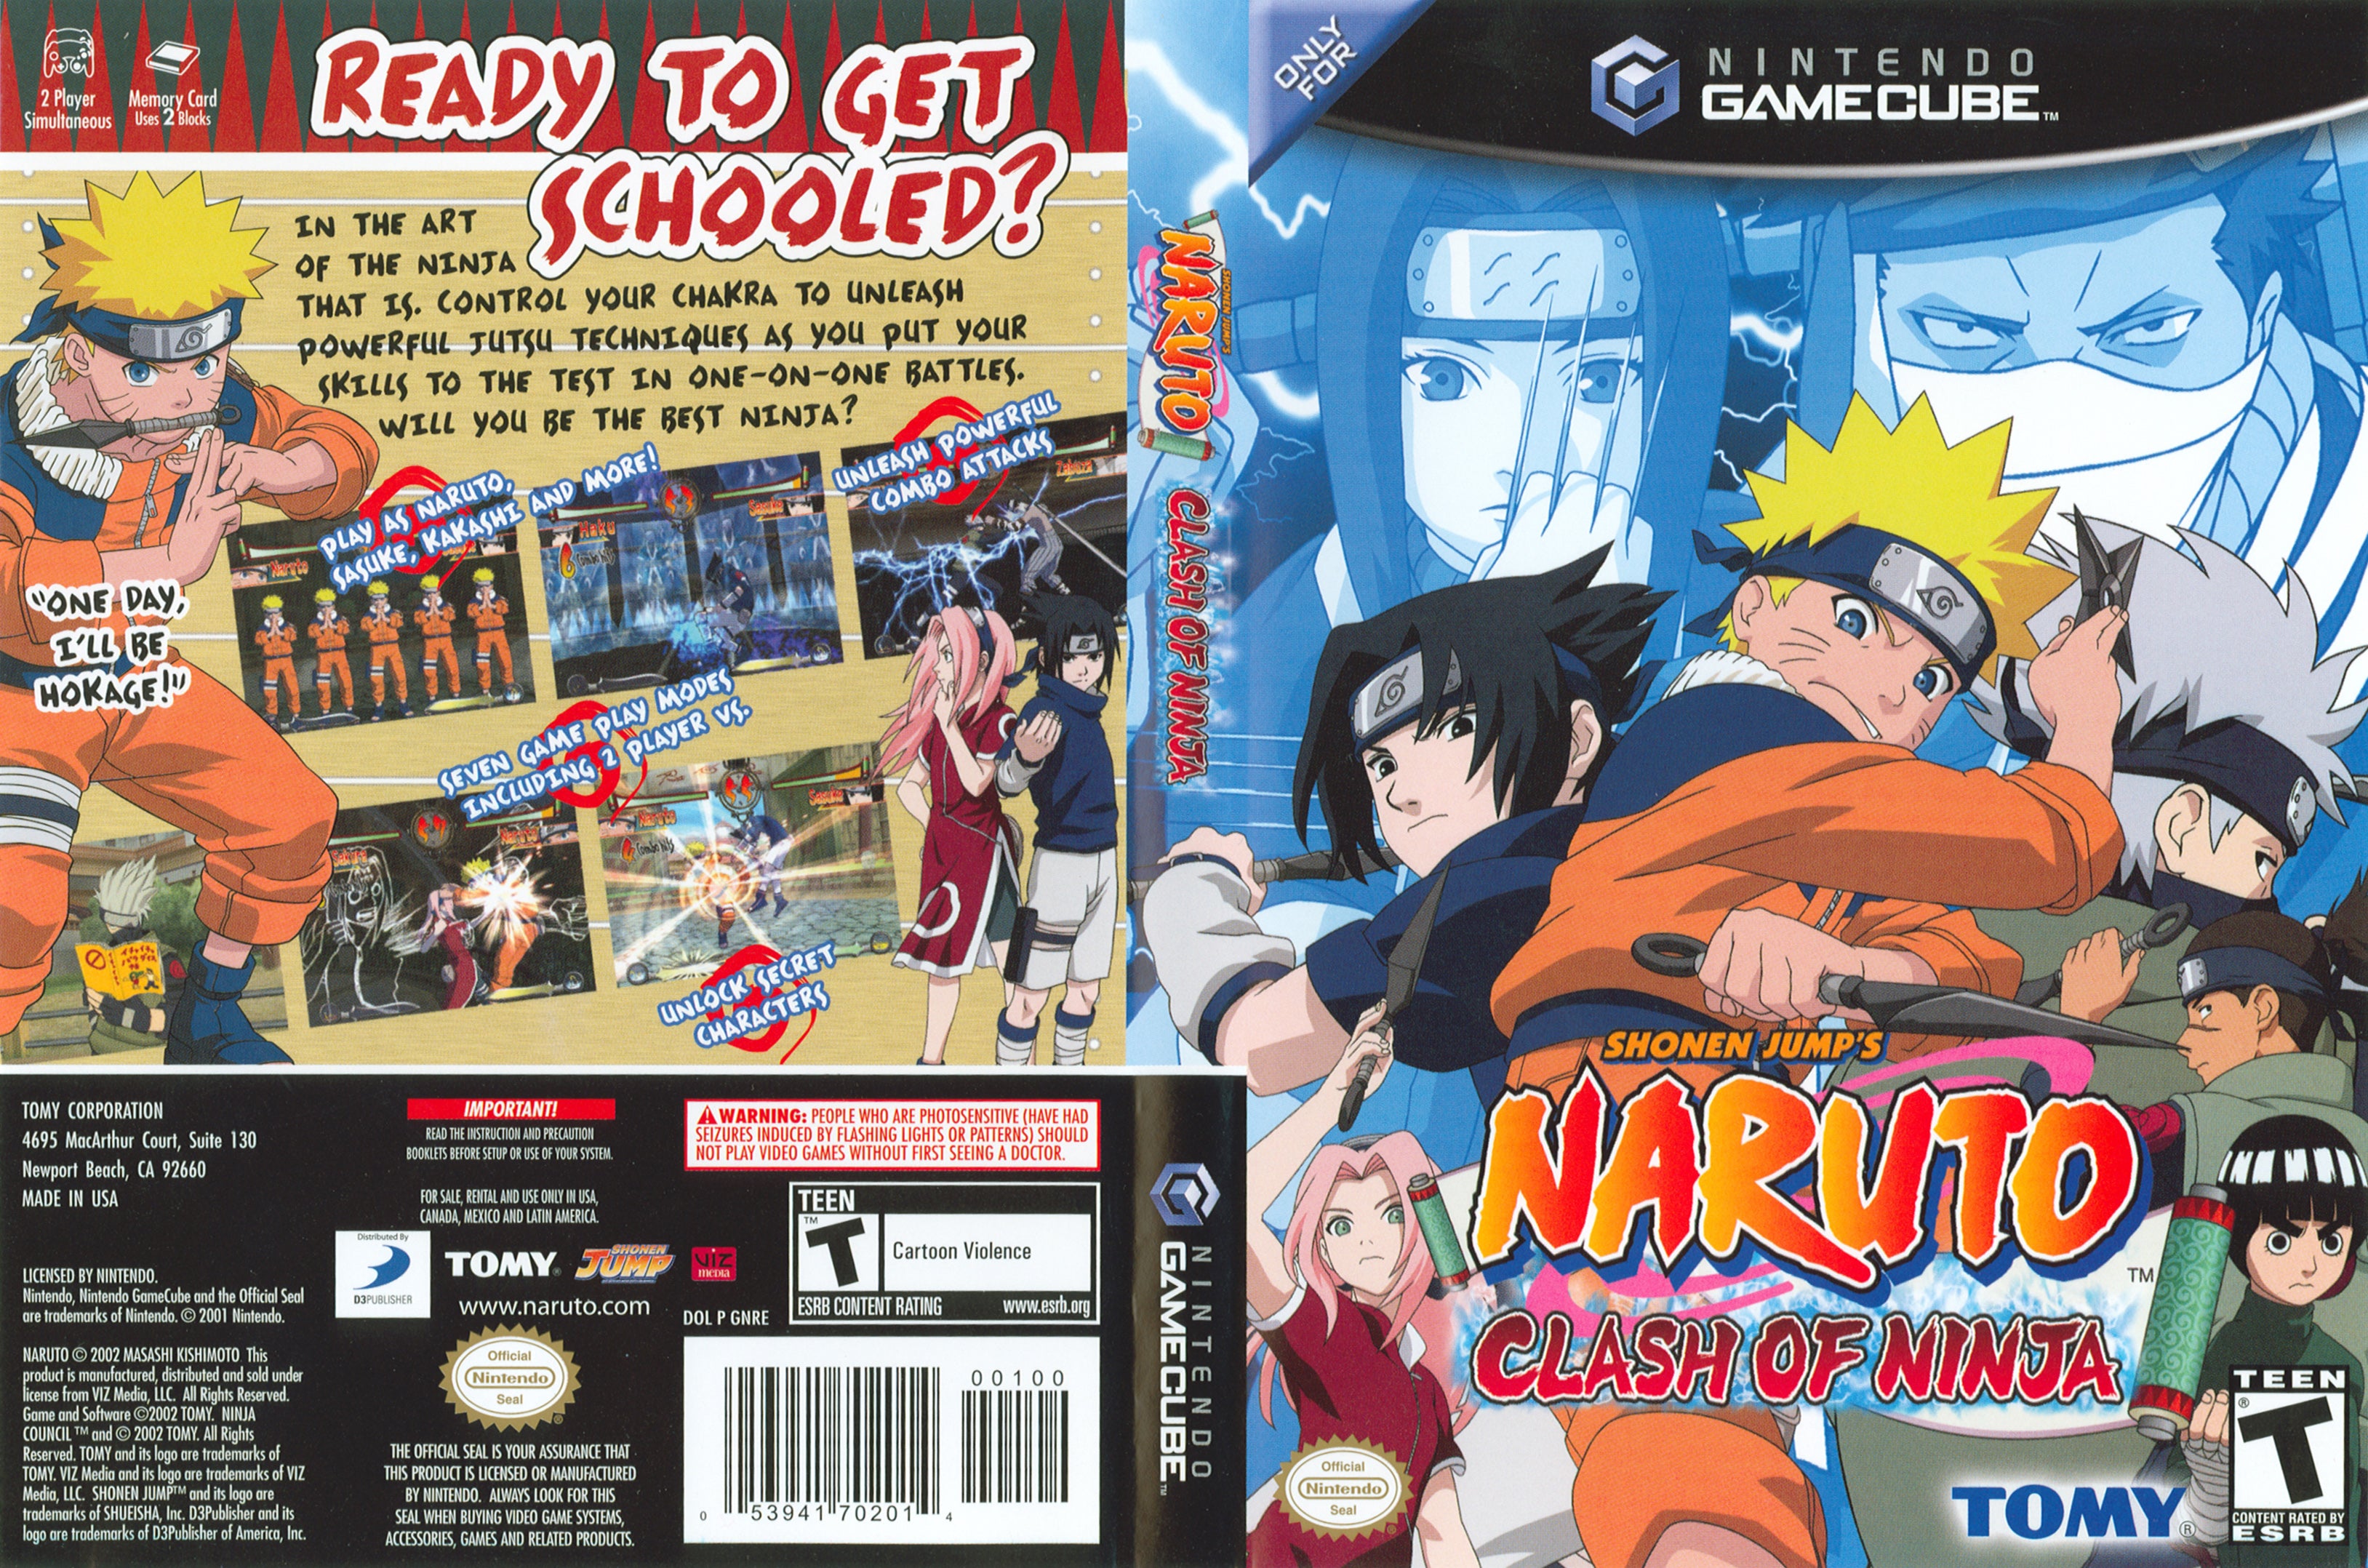 Naruto Clash Of Ninja C Gamecube